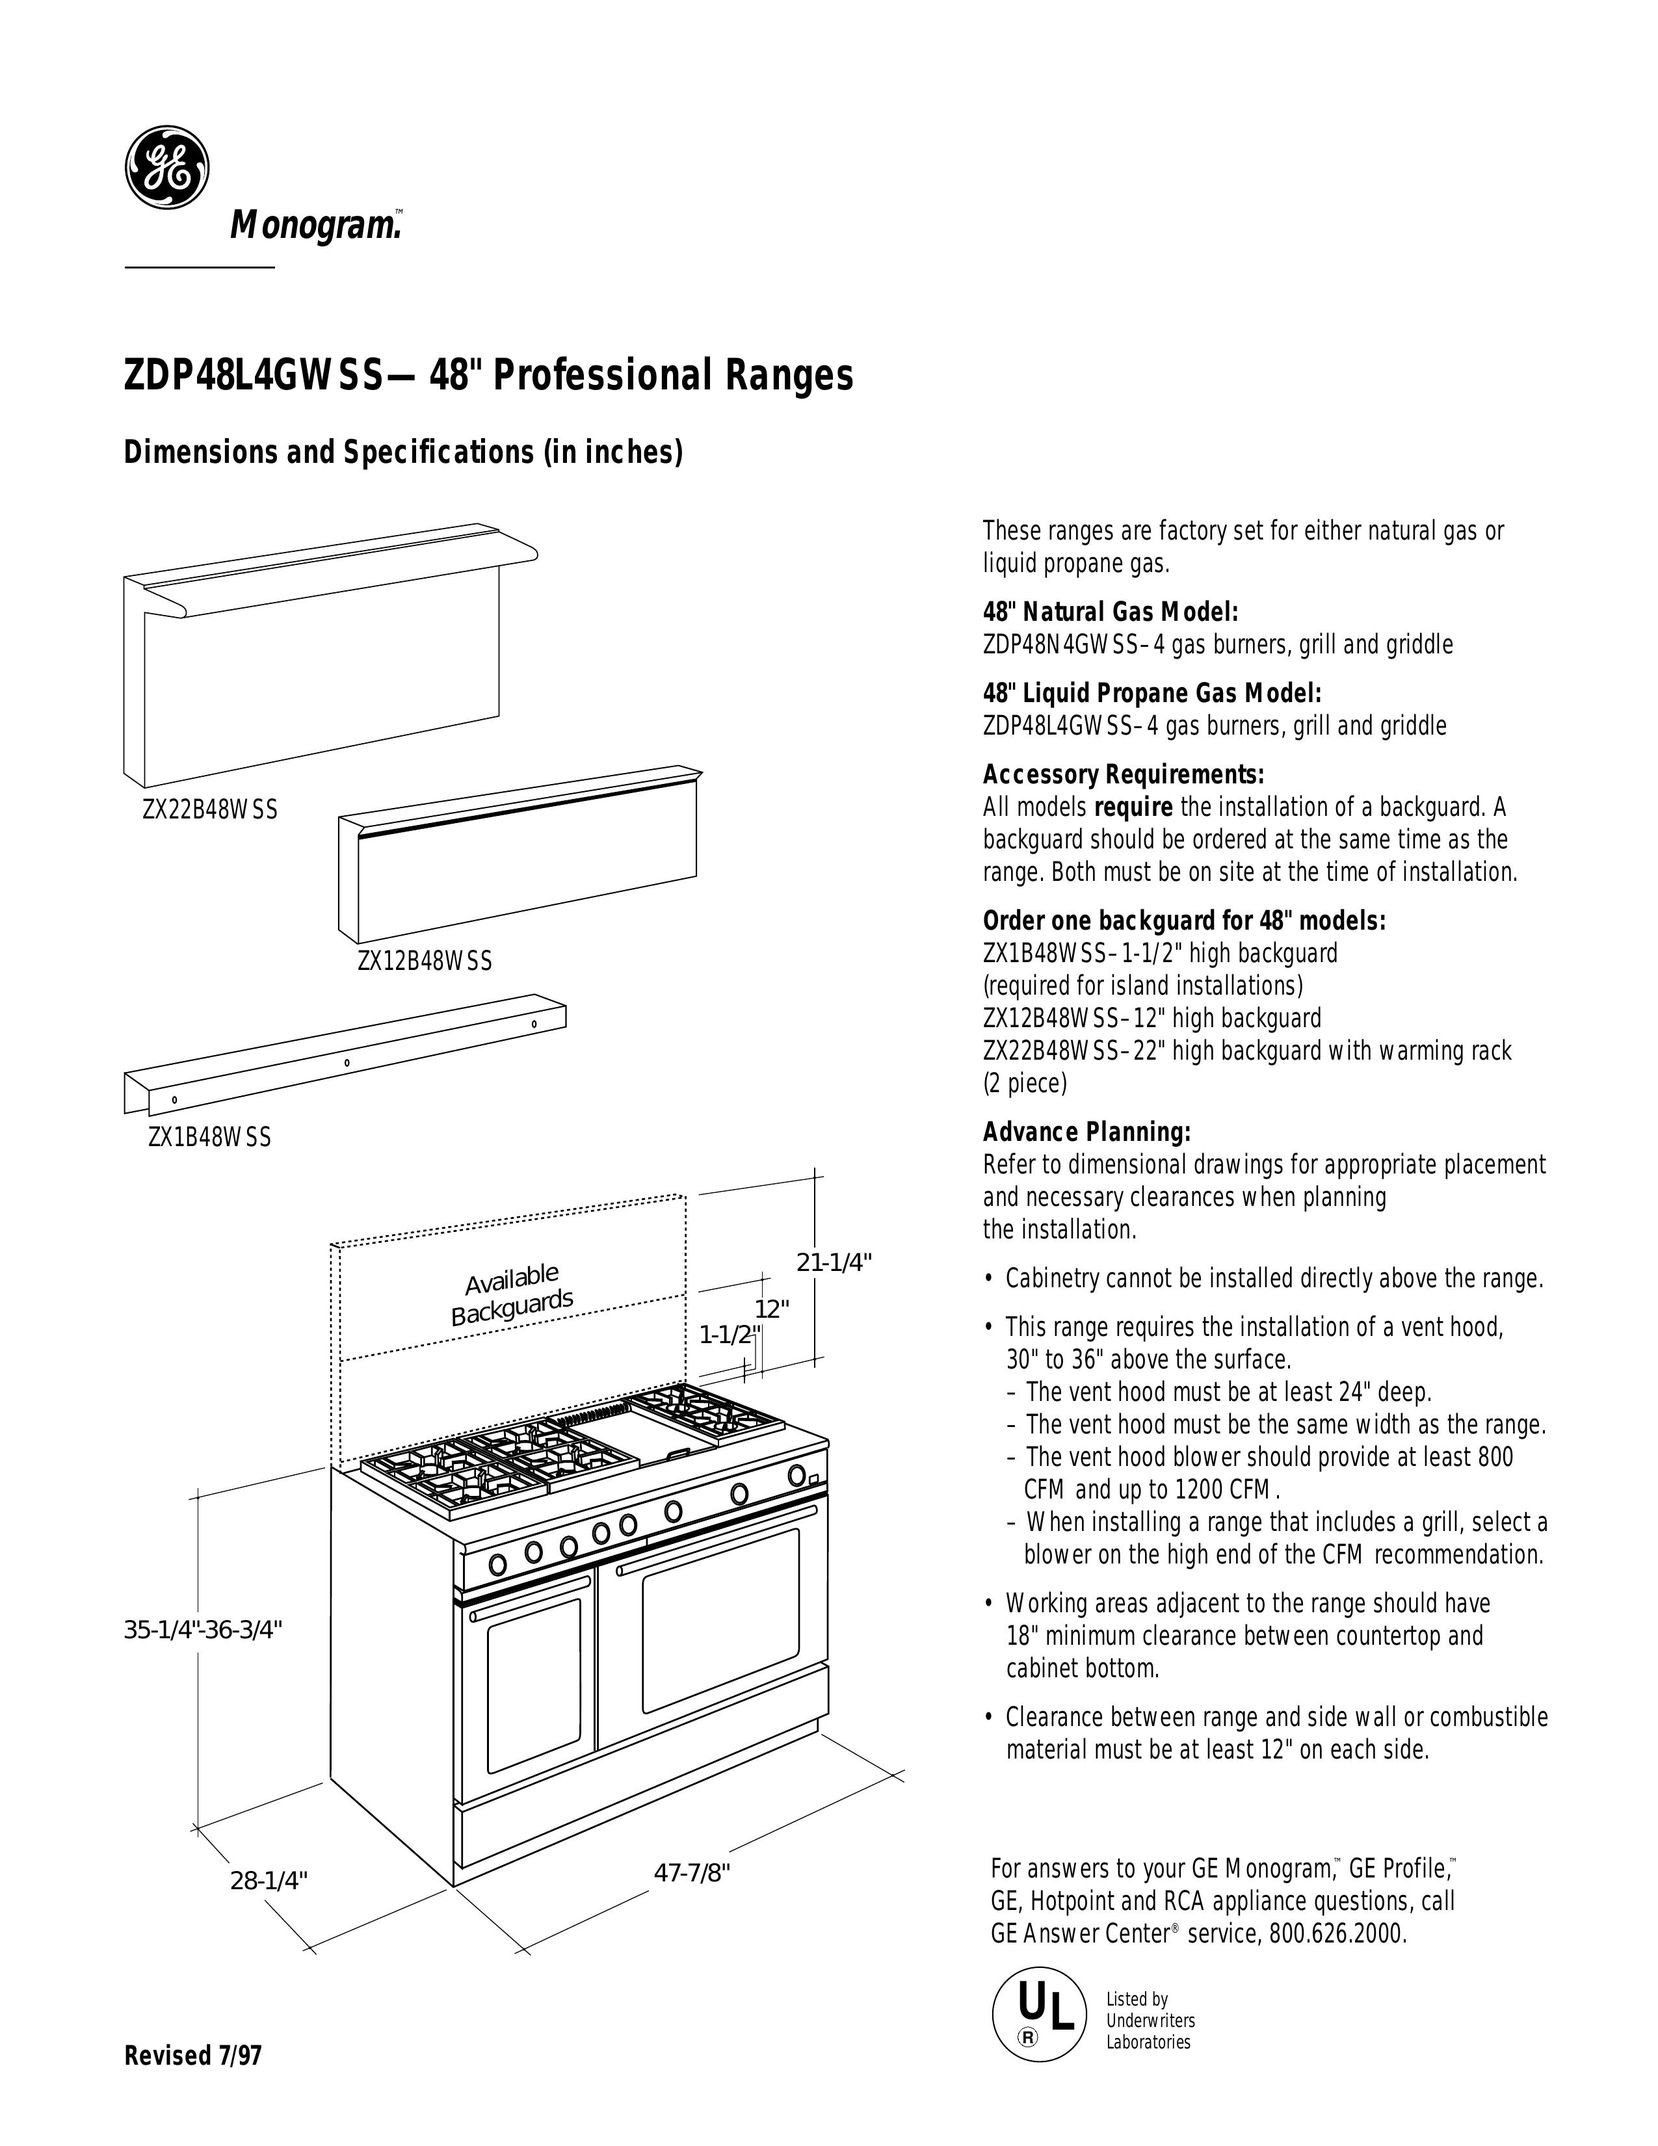 GE Monogram ZDP48L4GWSS Saw User Manual